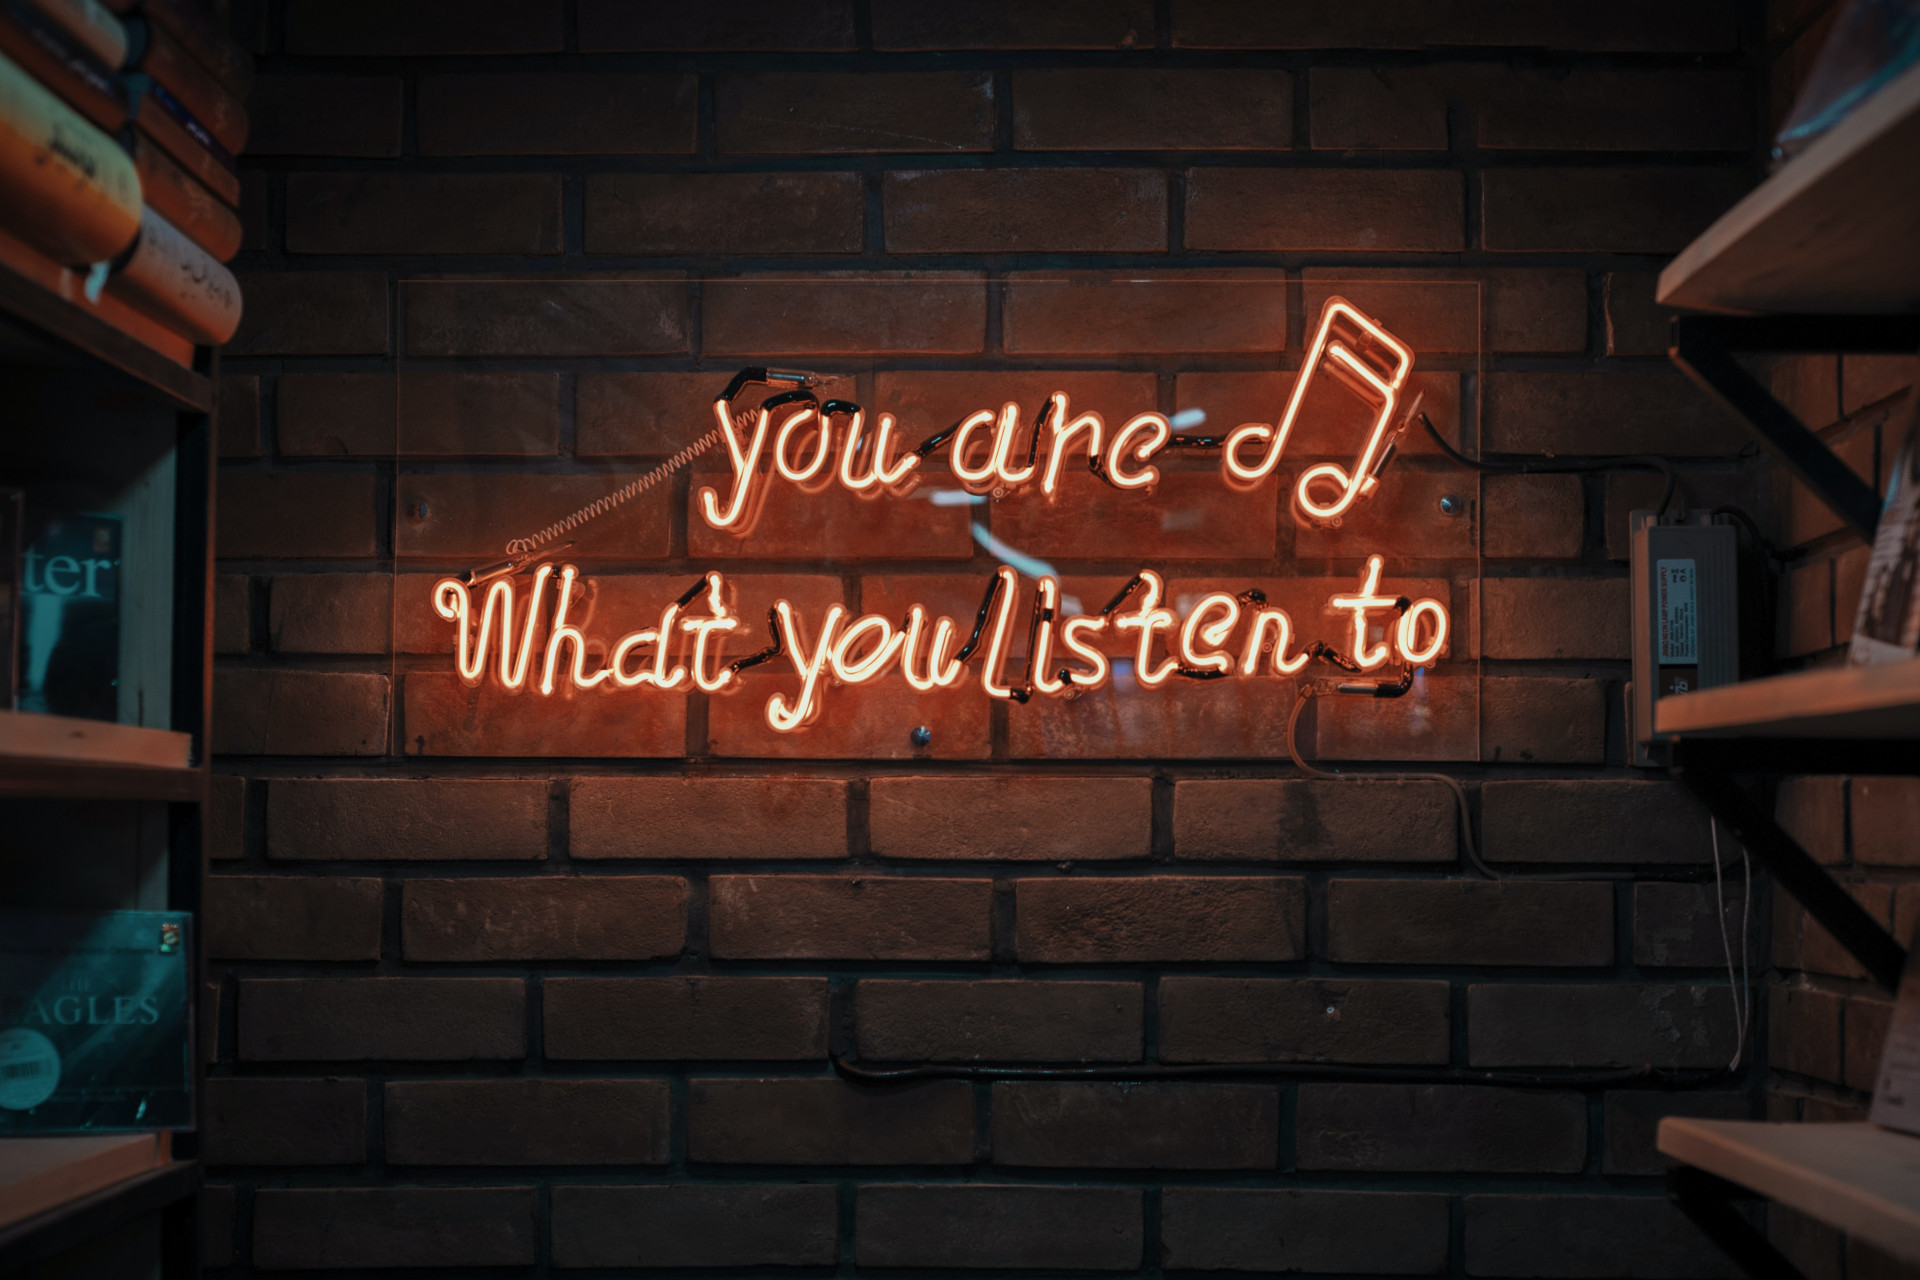 MUSICAMMINO, MUSICAMBIAMENTO: ascolti e riflessioni intorno a brani e canzoni, attraverso e oltre la musica